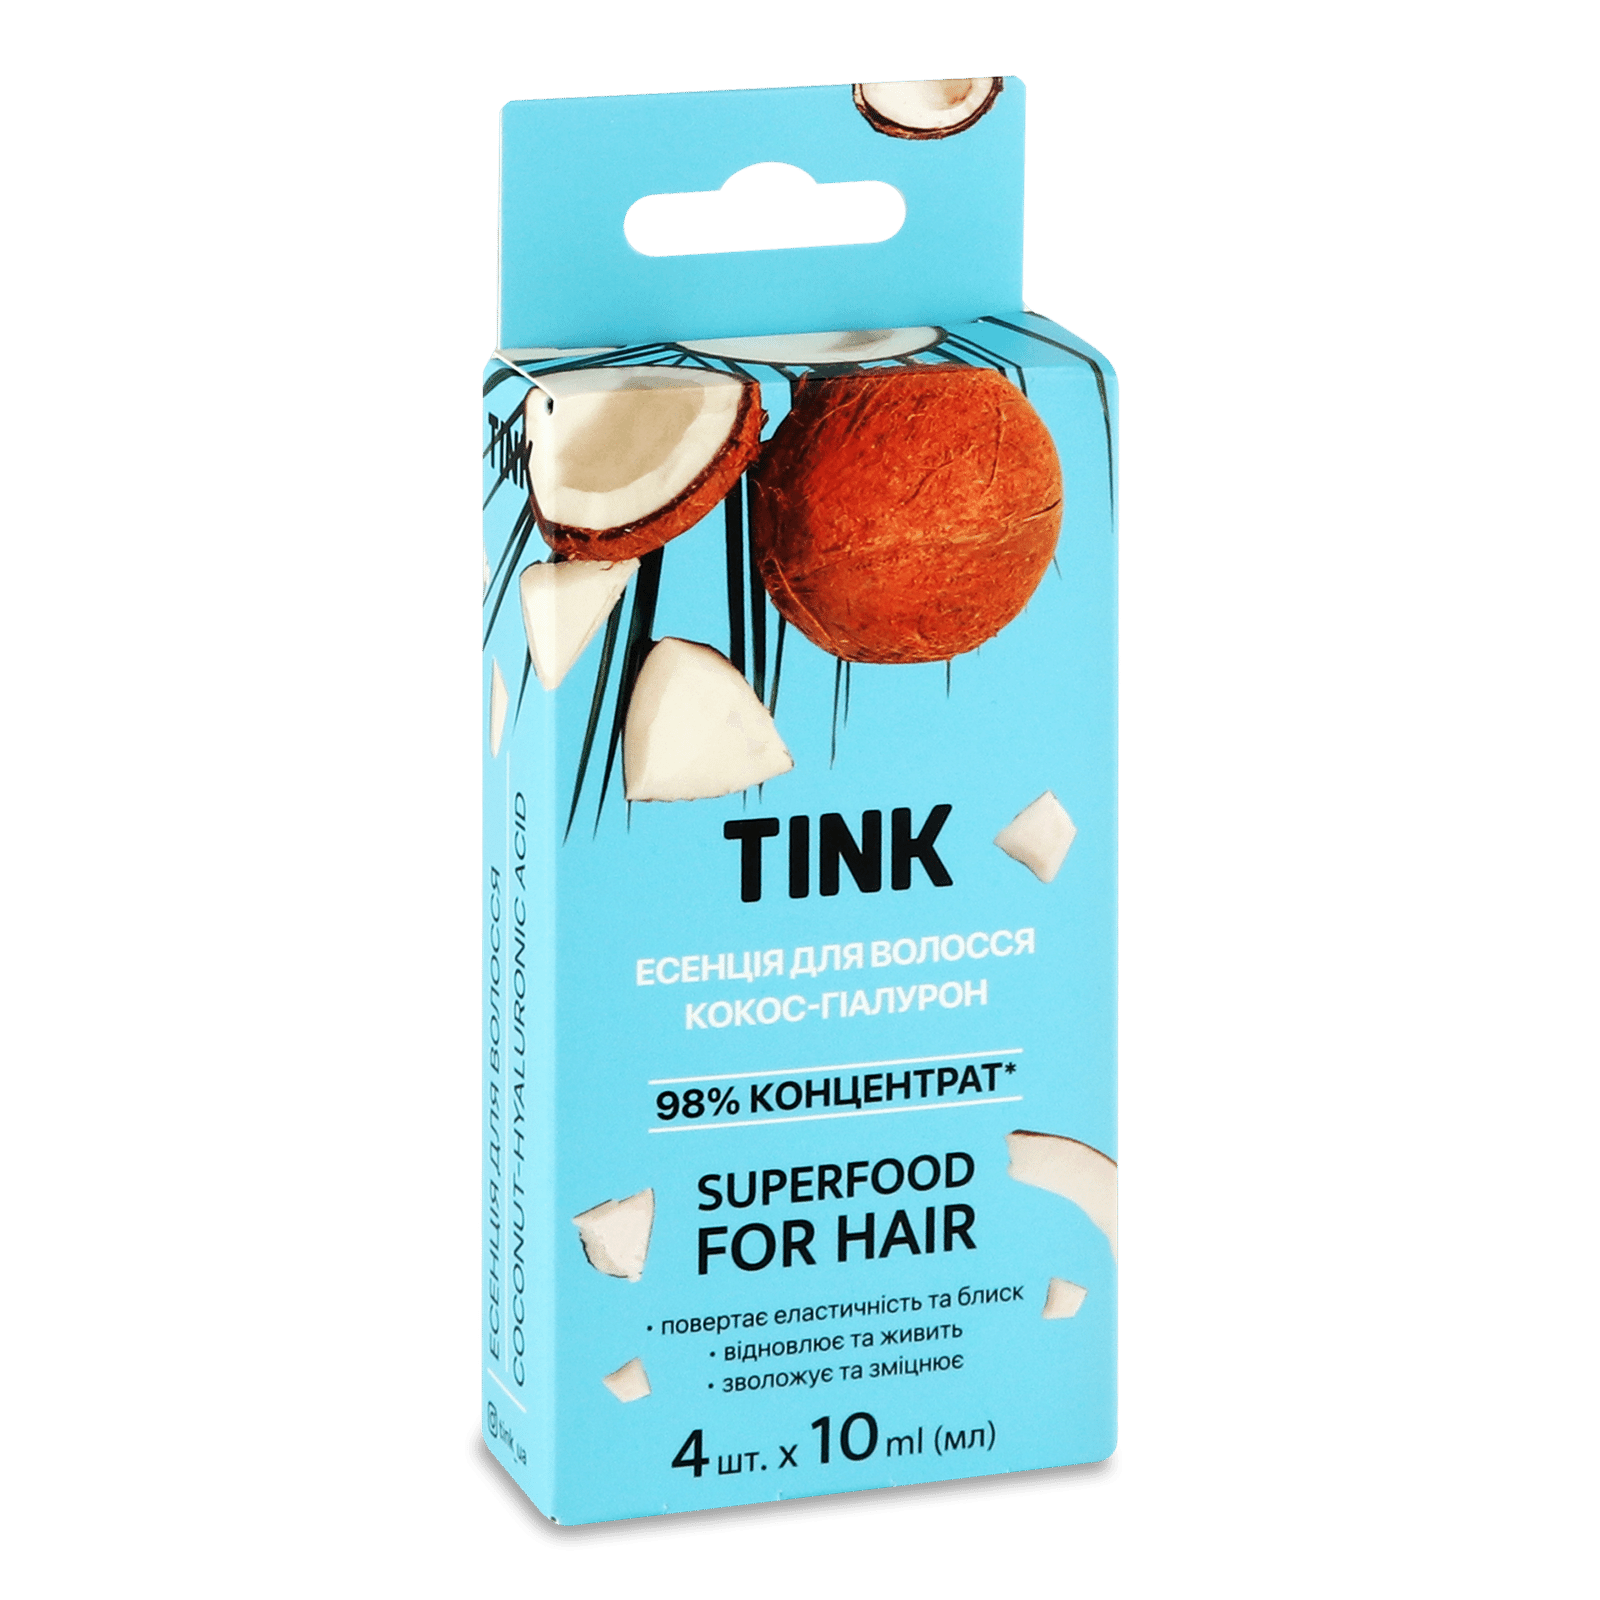 Есенція для волосся Tink кокос-гіалурон - 1